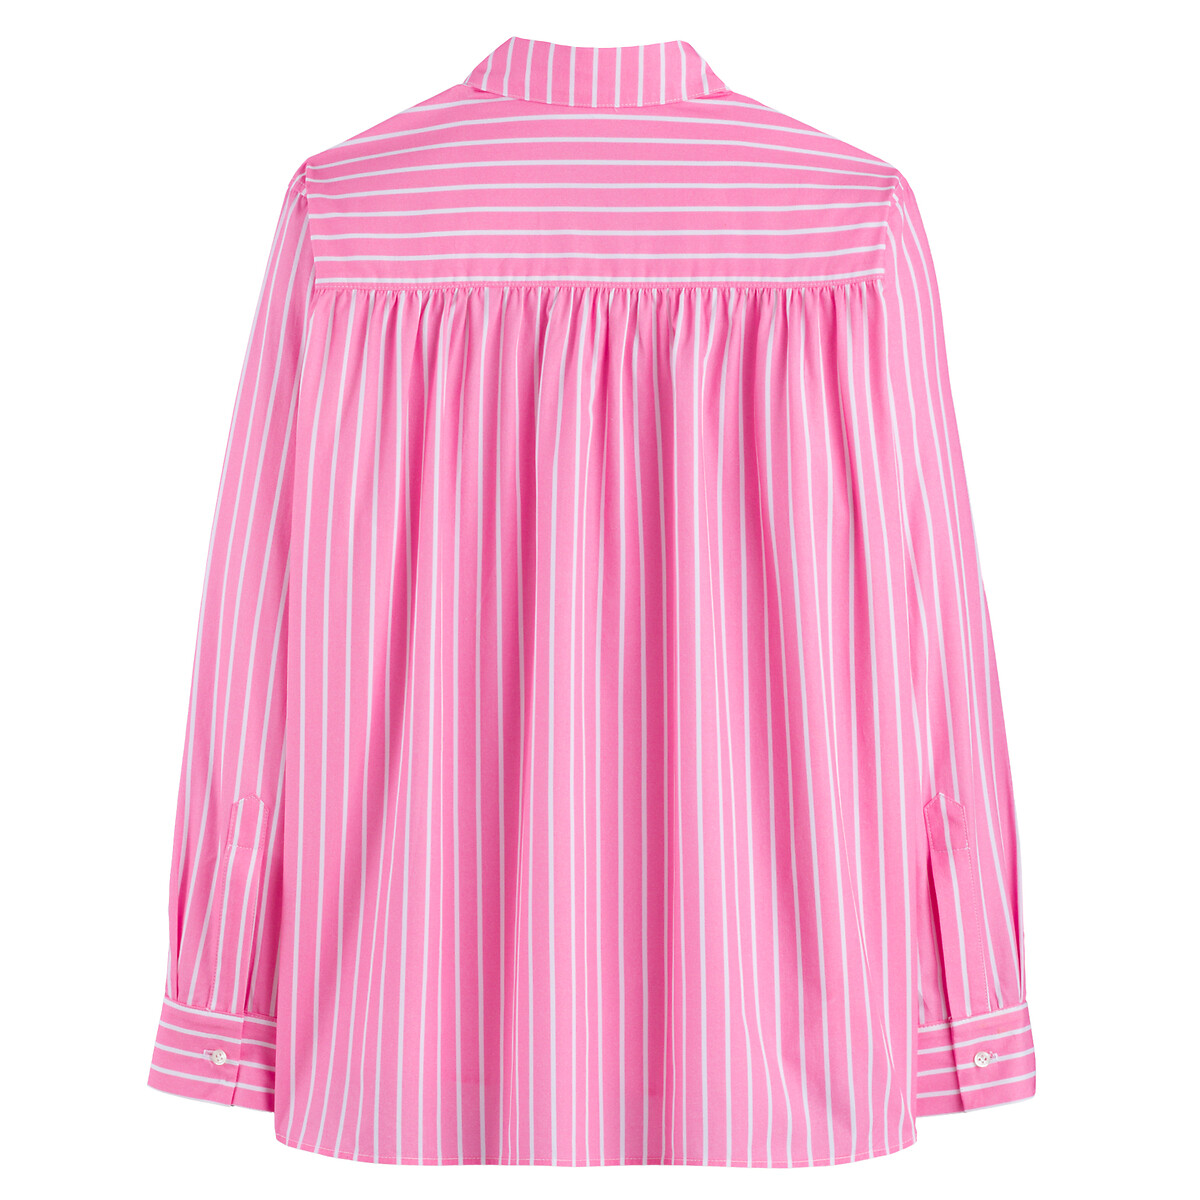 Рубашка В полоску с длинными рукавами 34 (FR) - 40 (RUS) розовый LaRedoute, размер 34 (FR) - 40 (RUS) Рубашка В полоску с длинными рукавами 34 (FR) - 40 (RUS) розовый - фото 3